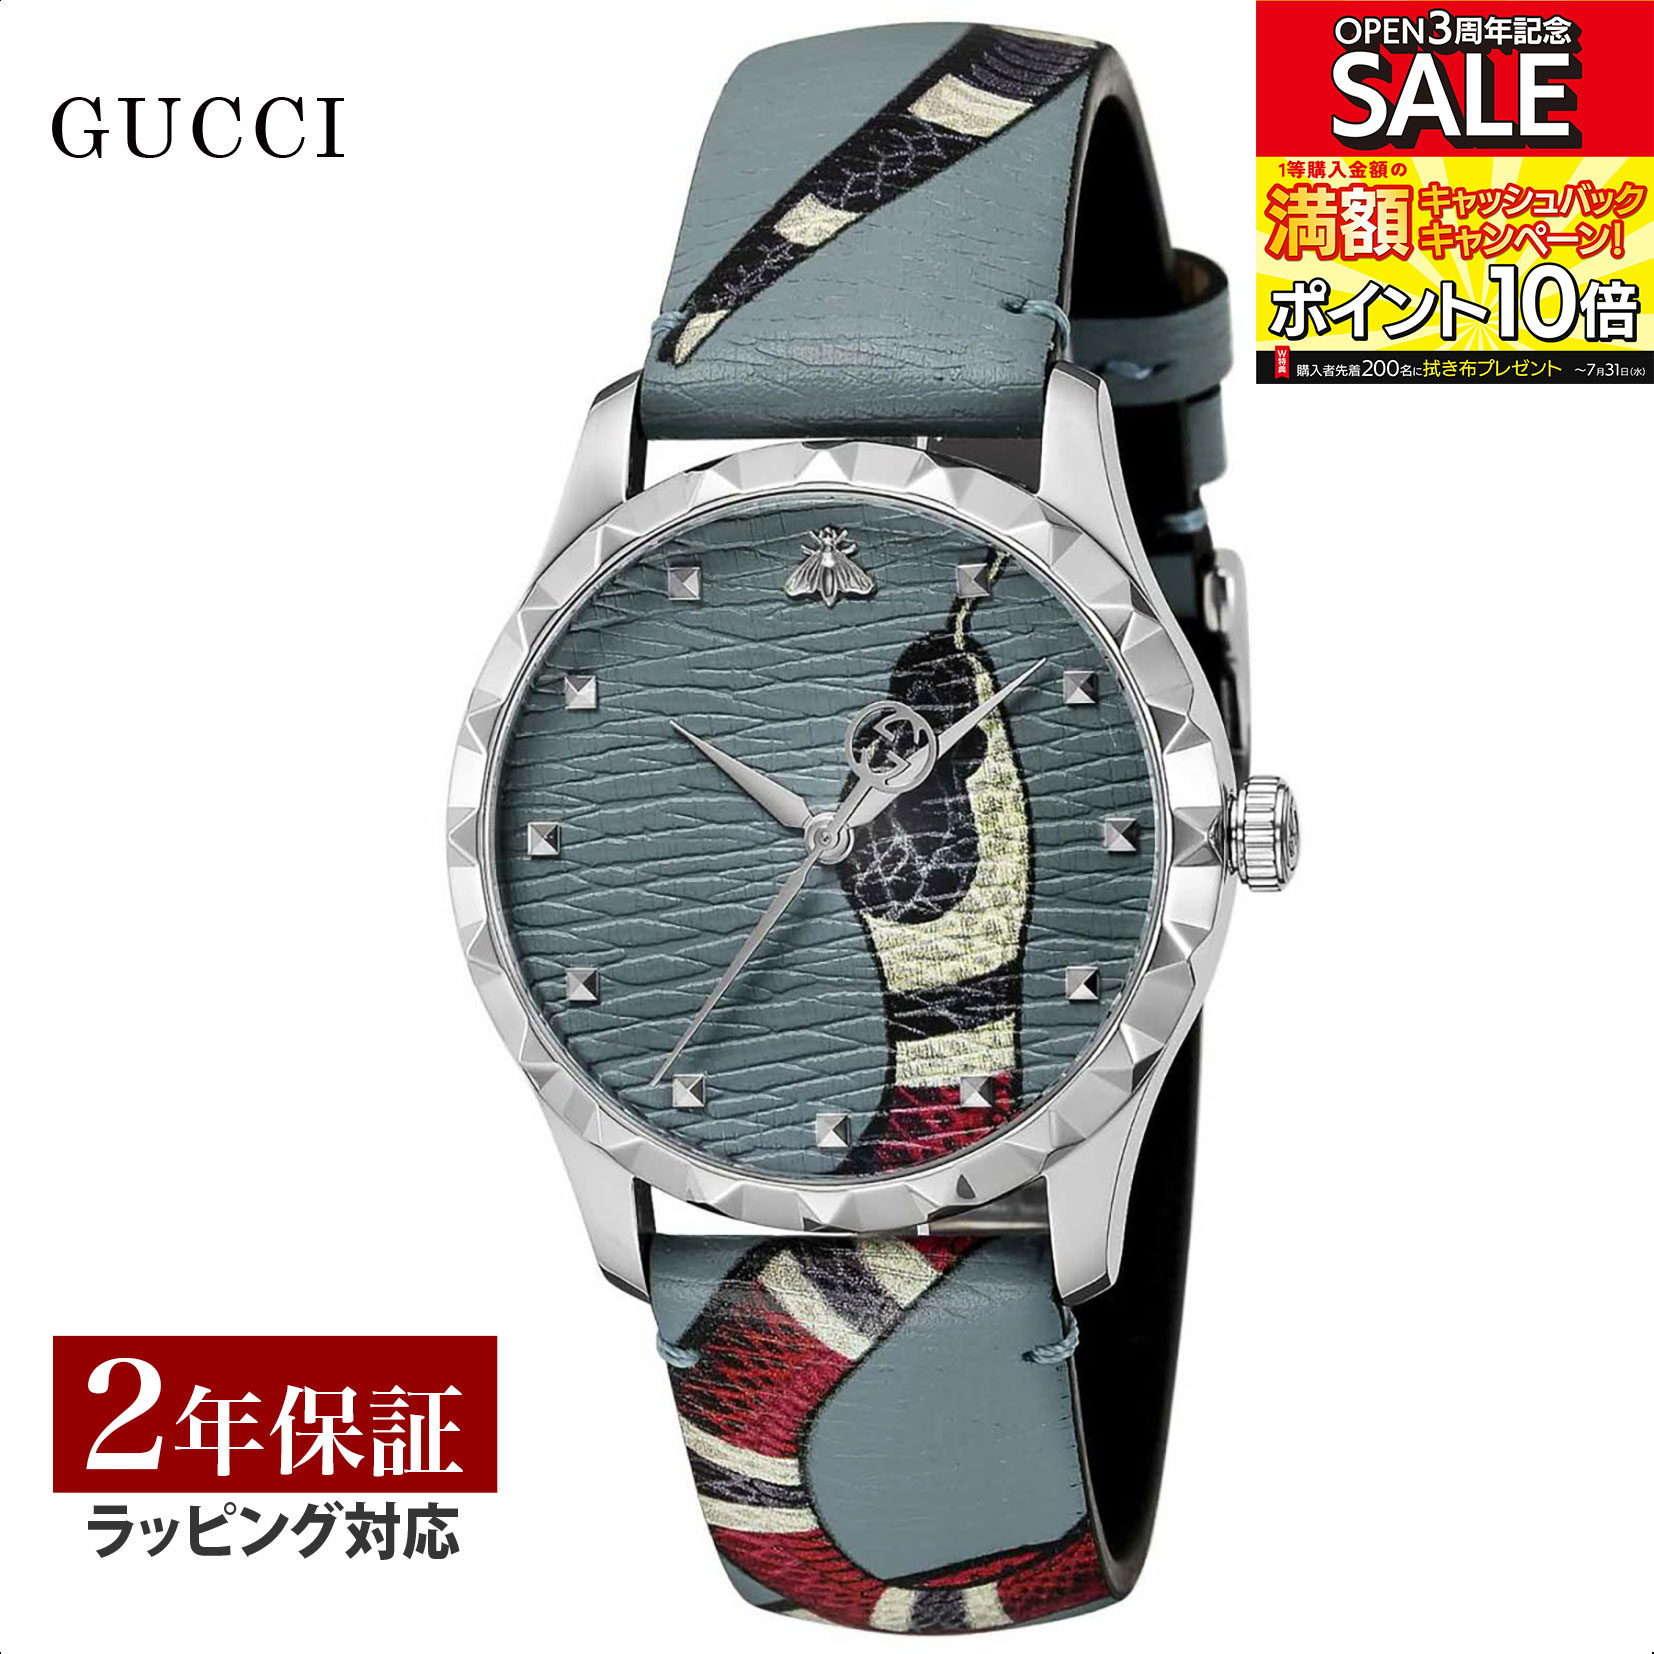 グッチ GUCCI メンズ レディース 時計 G-TIMELESS Gタイムレス クォーツ ユニセックス ブルー YA1264080 時計 腕時計 高級腕時計 ブランド